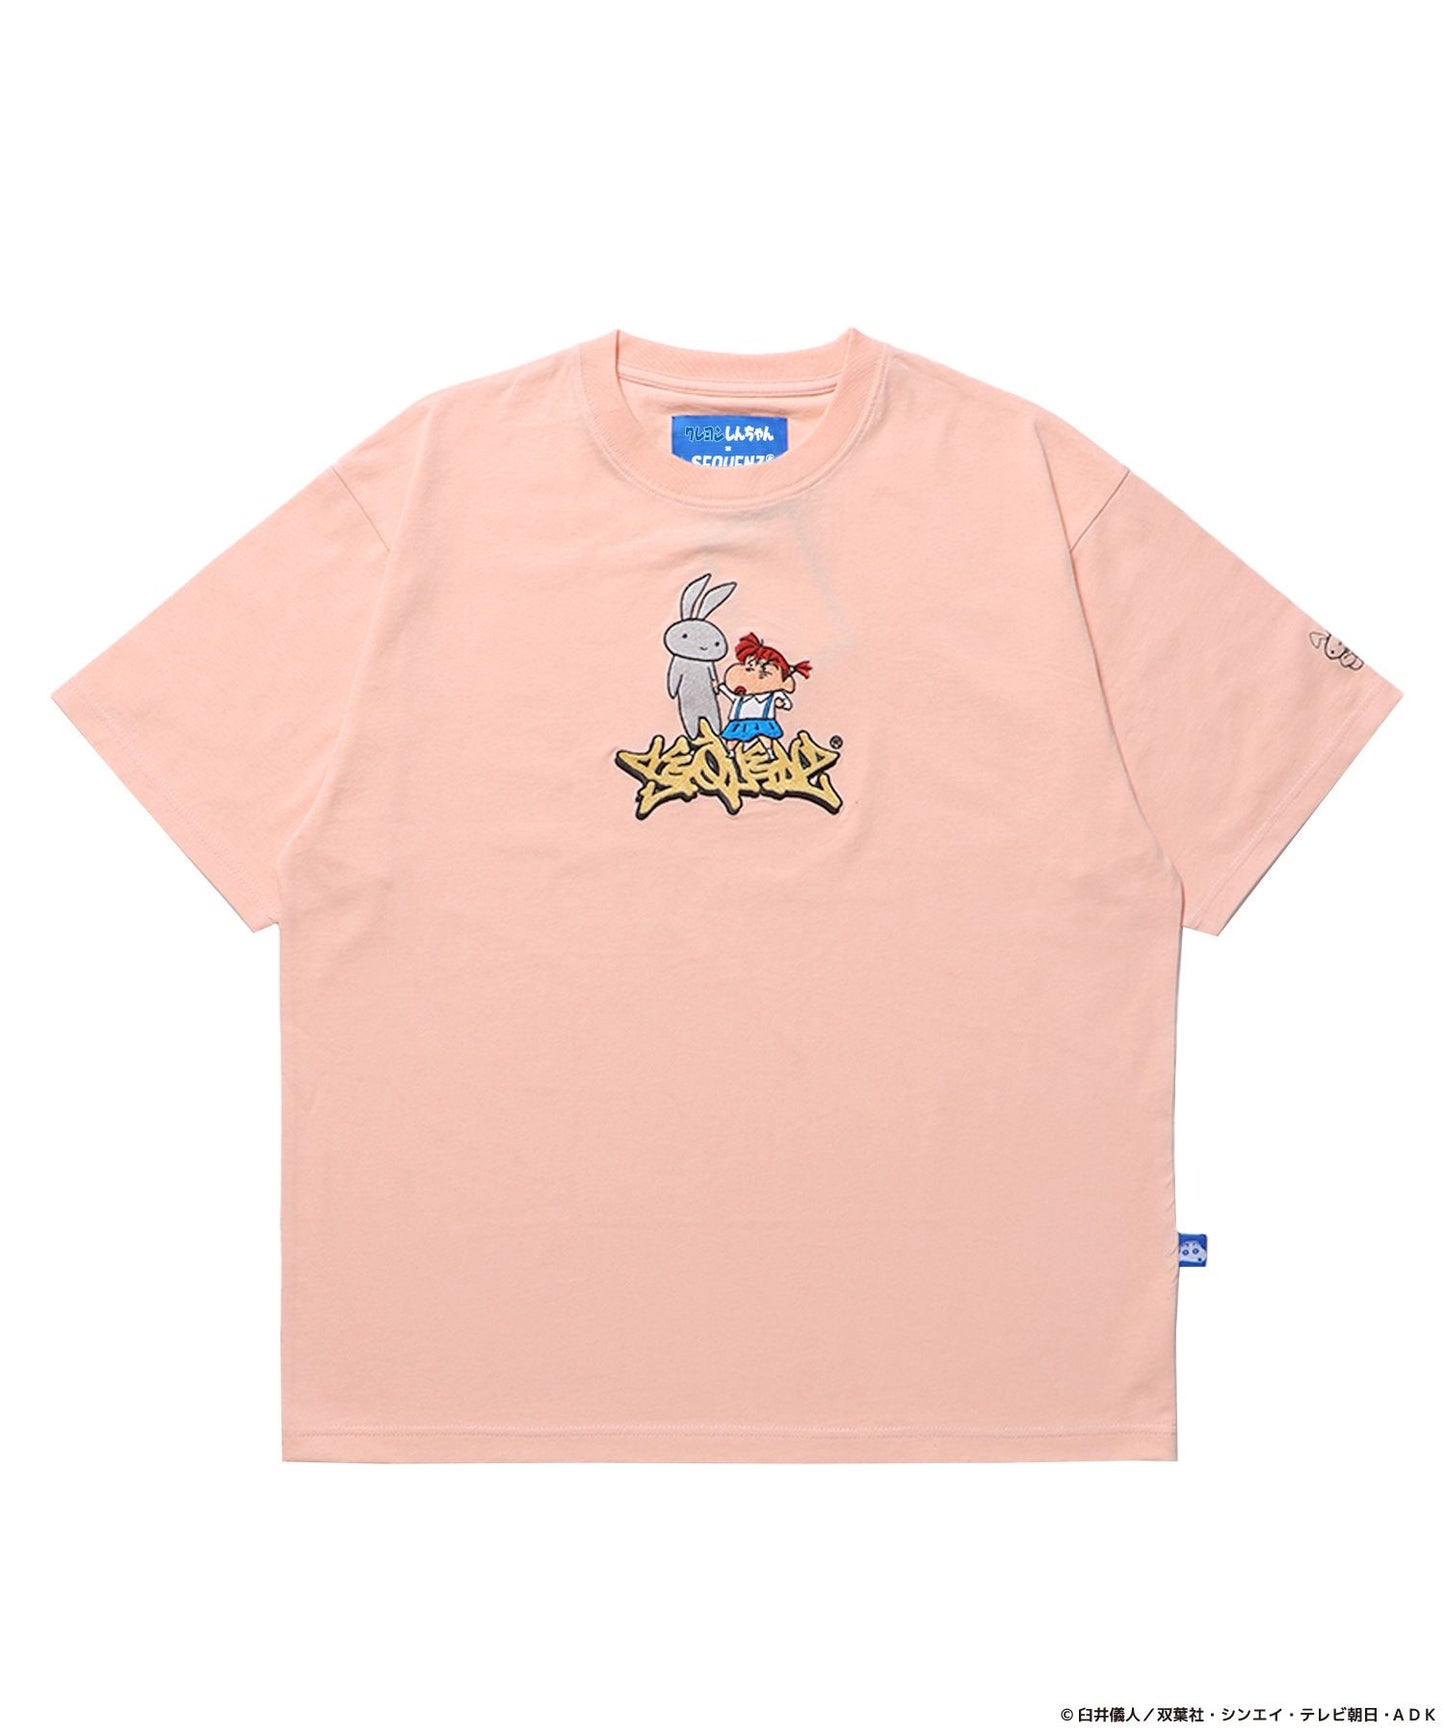 【SEQUENZ】CS NENE EMB. S/S TEE / クレヨンしんちゃん 半袖Tシャツ クルーネック ワンポイント 刺繍 ピンク